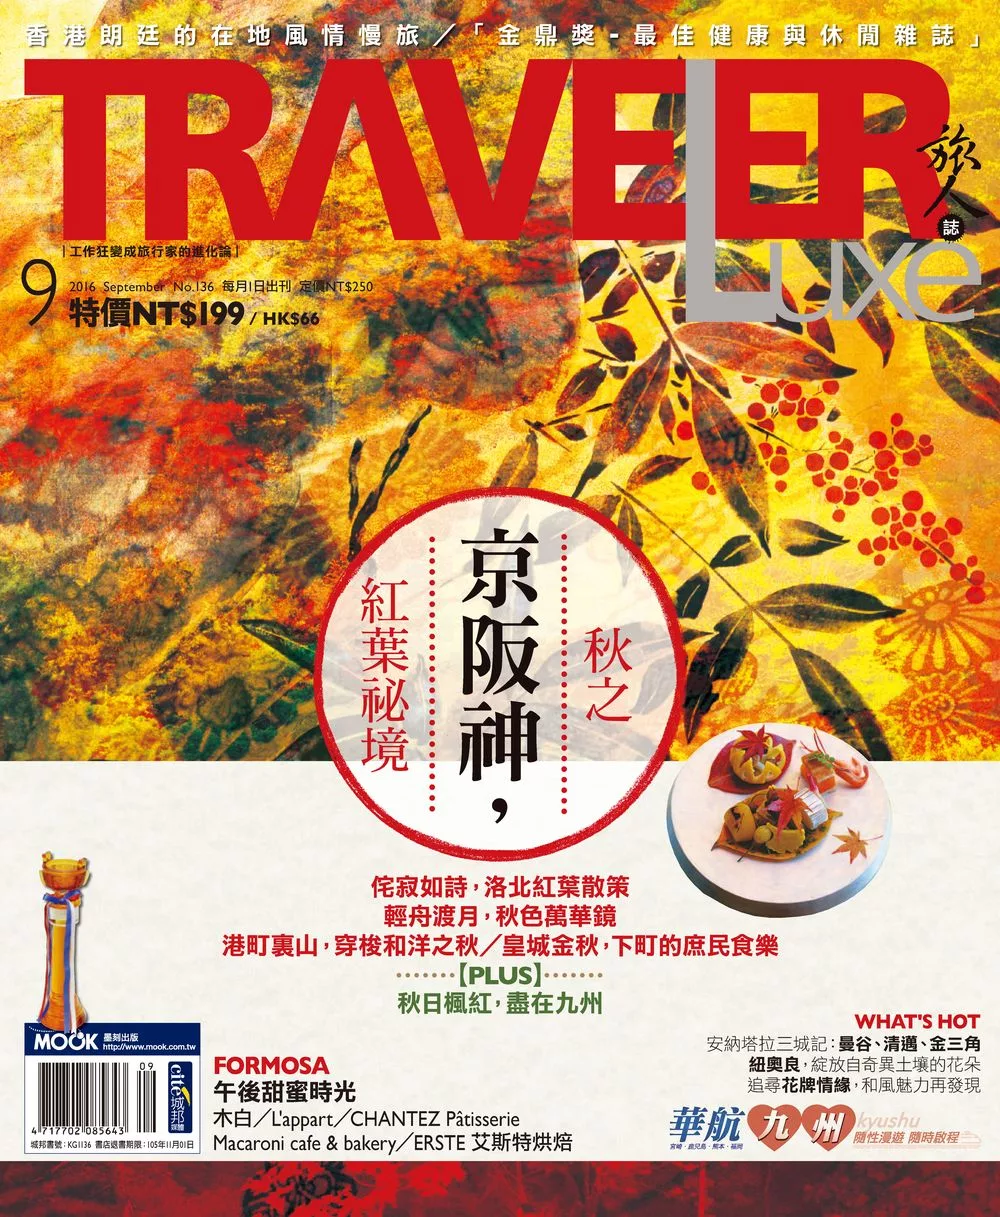 TRAVELER LUXE 旅人誌 9月號/2016第136期 (電子雜誌)